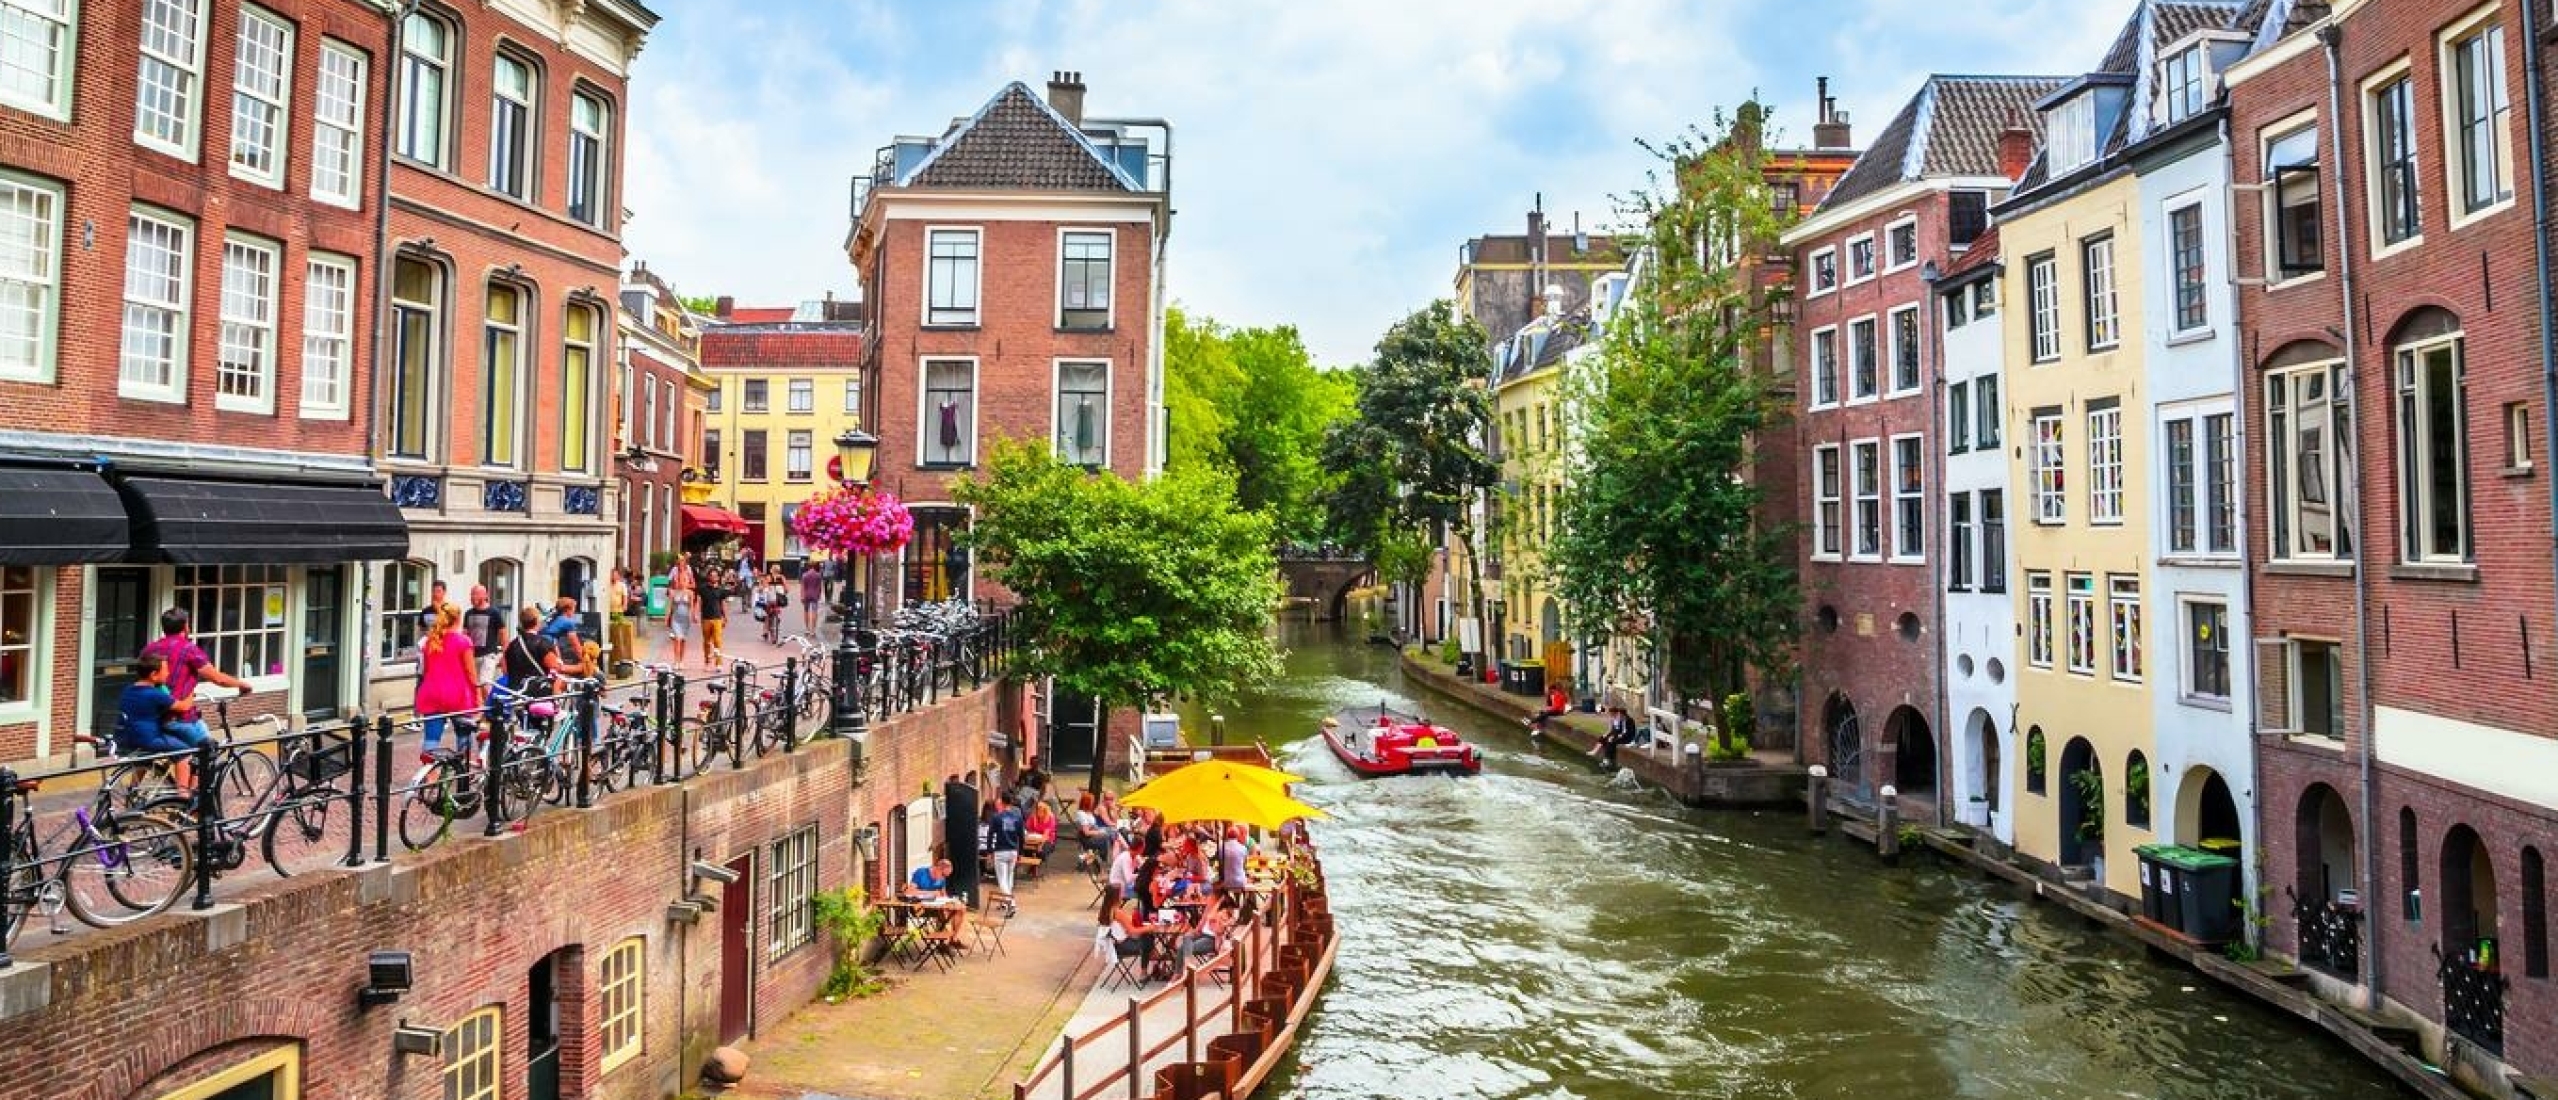 Les 10 sites incontournables à découvrir à Utrecht